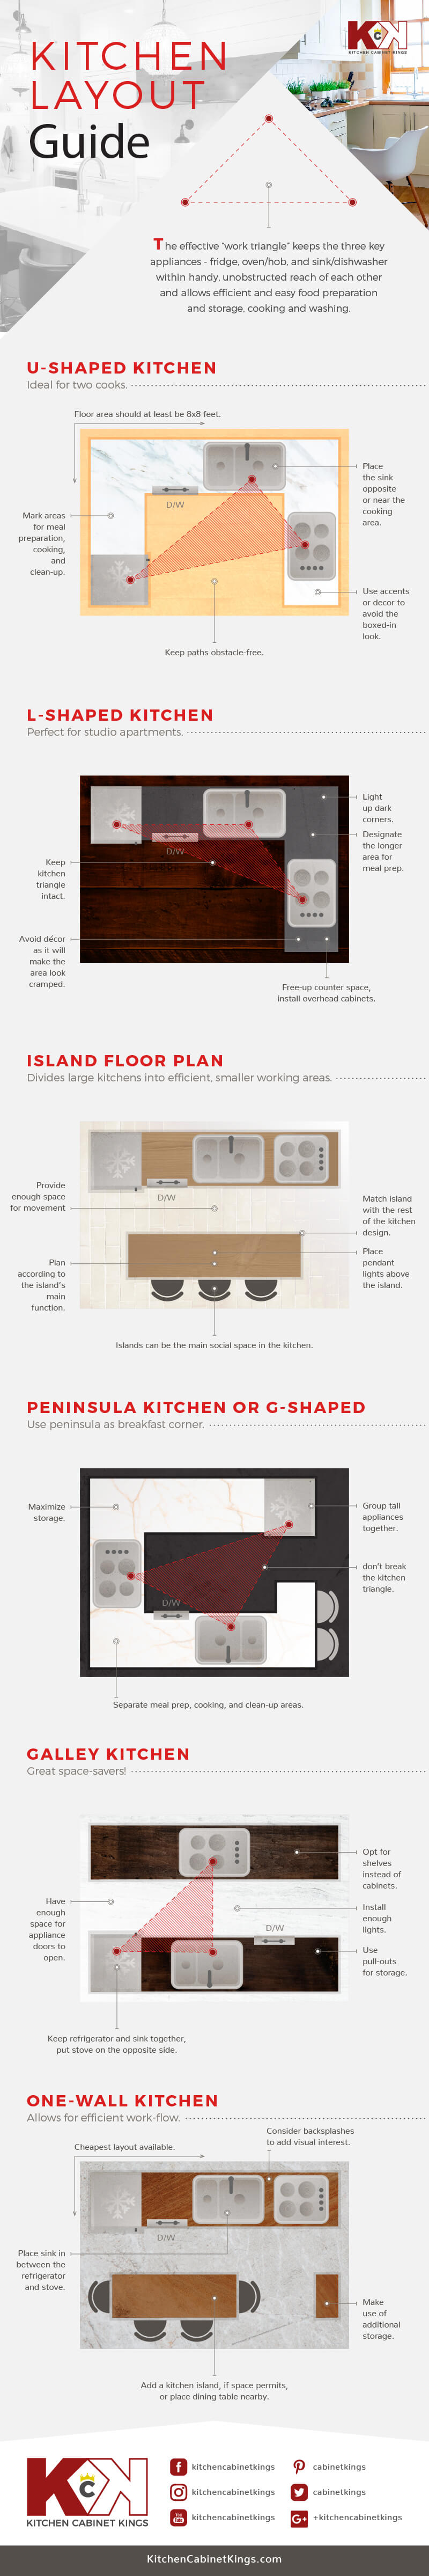 Kitchen Layout Templates 6 Different Designs Hgtv